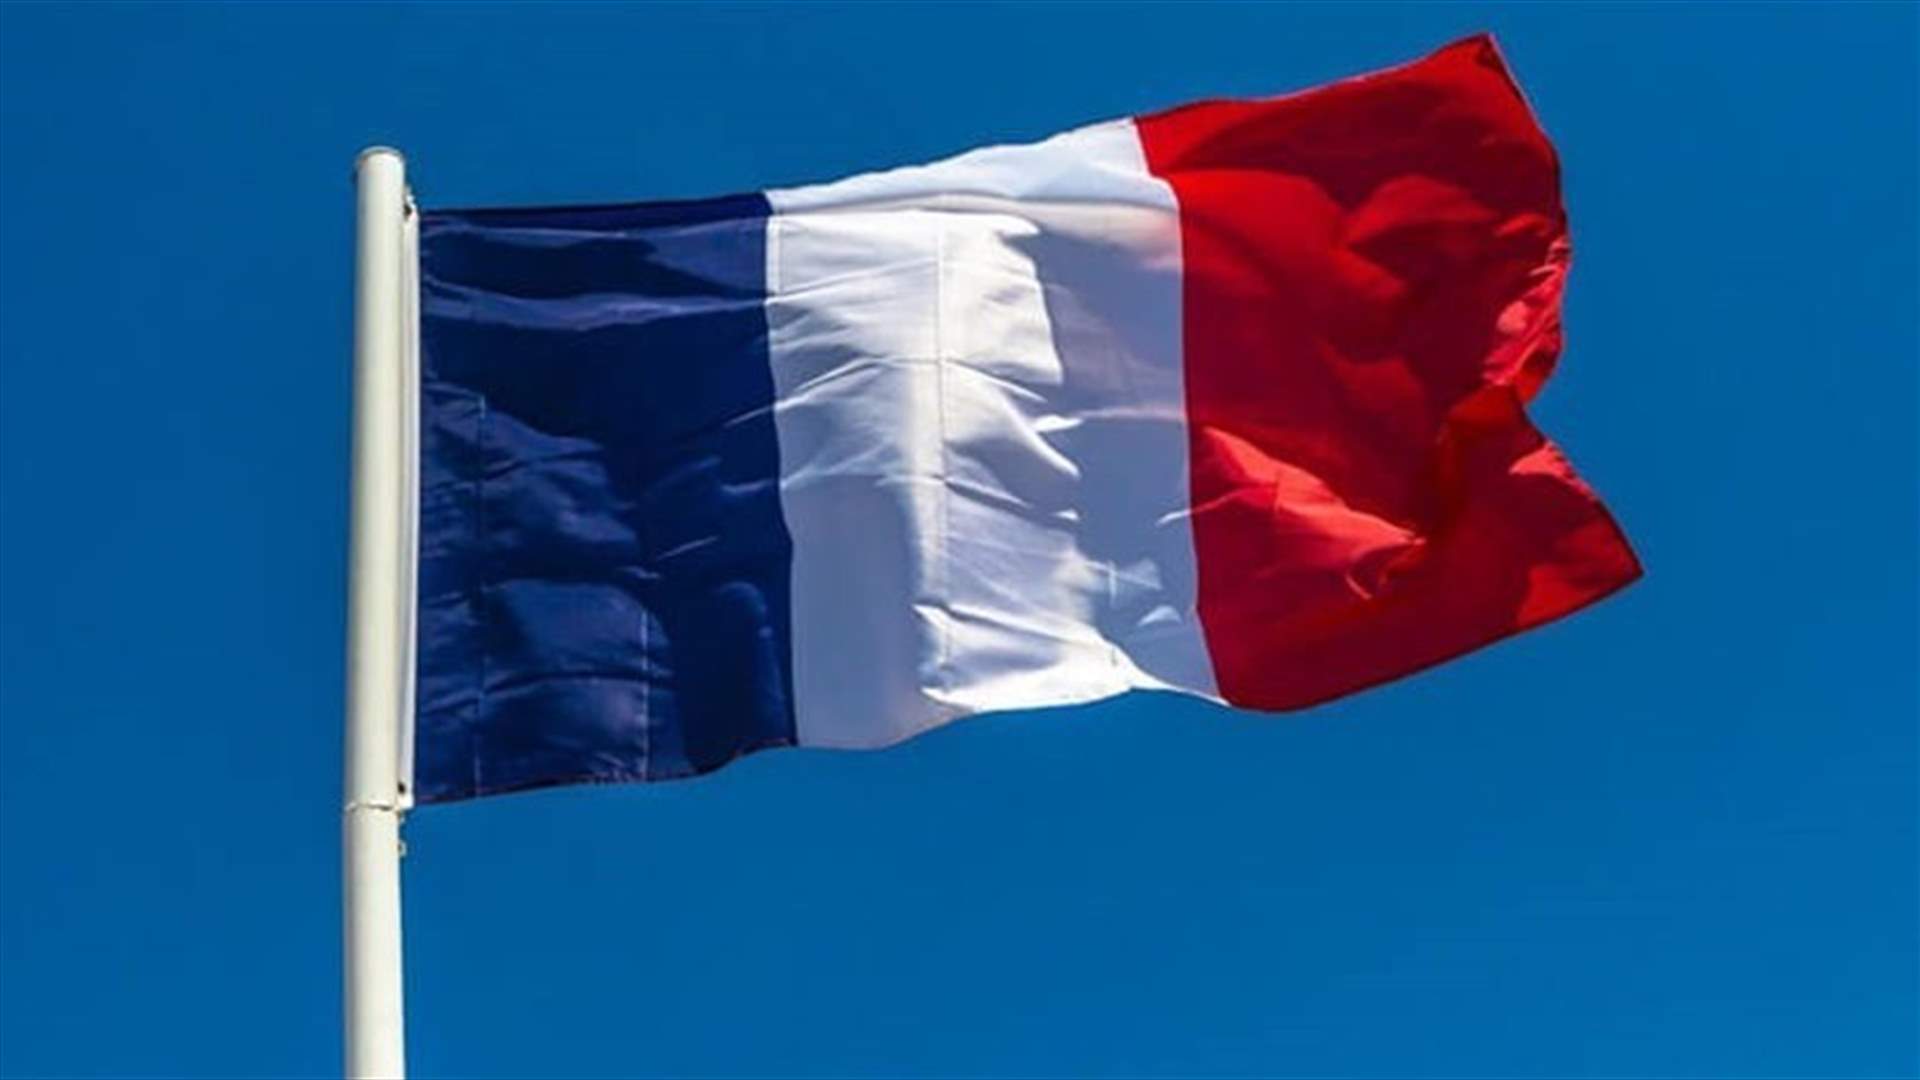 الضغوط الأجنبية يوازيها تمسك فرنسي بالمبادرة (اللواء)